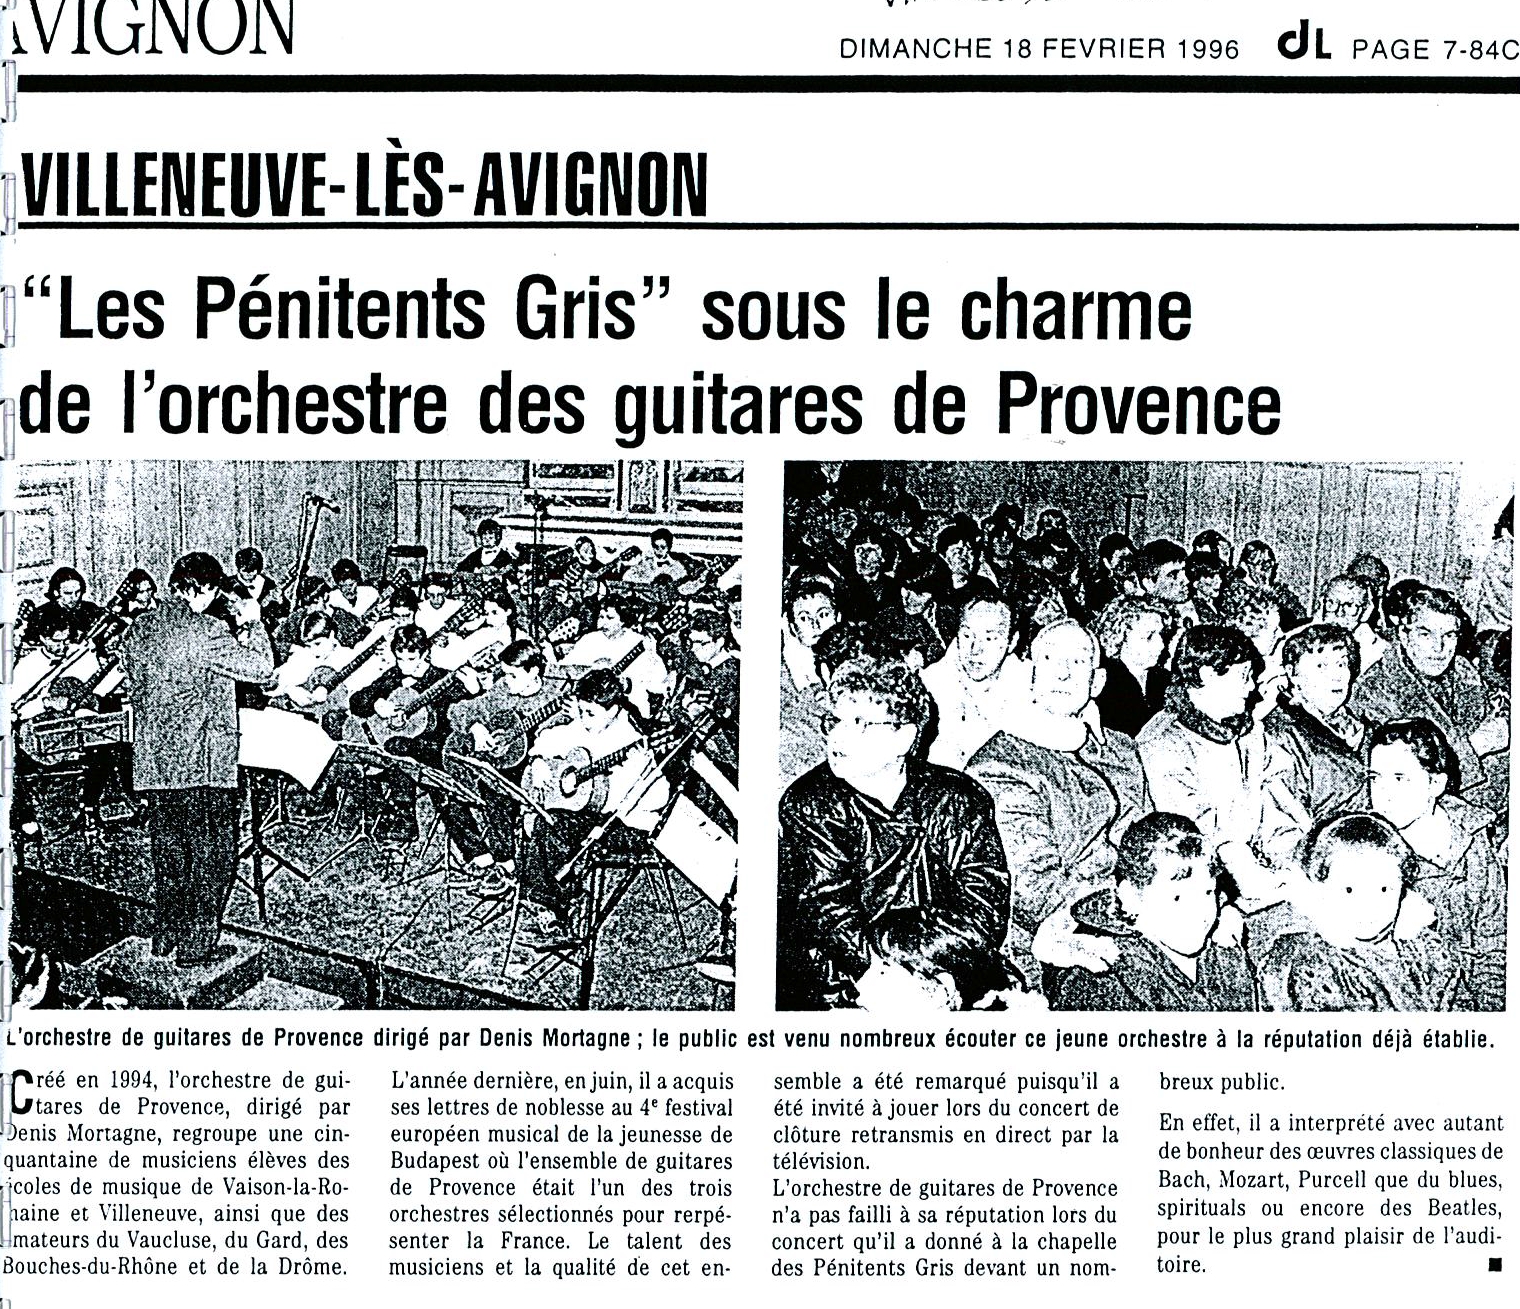 19960218-vaucluse-matin-villeneuve-les-avignon